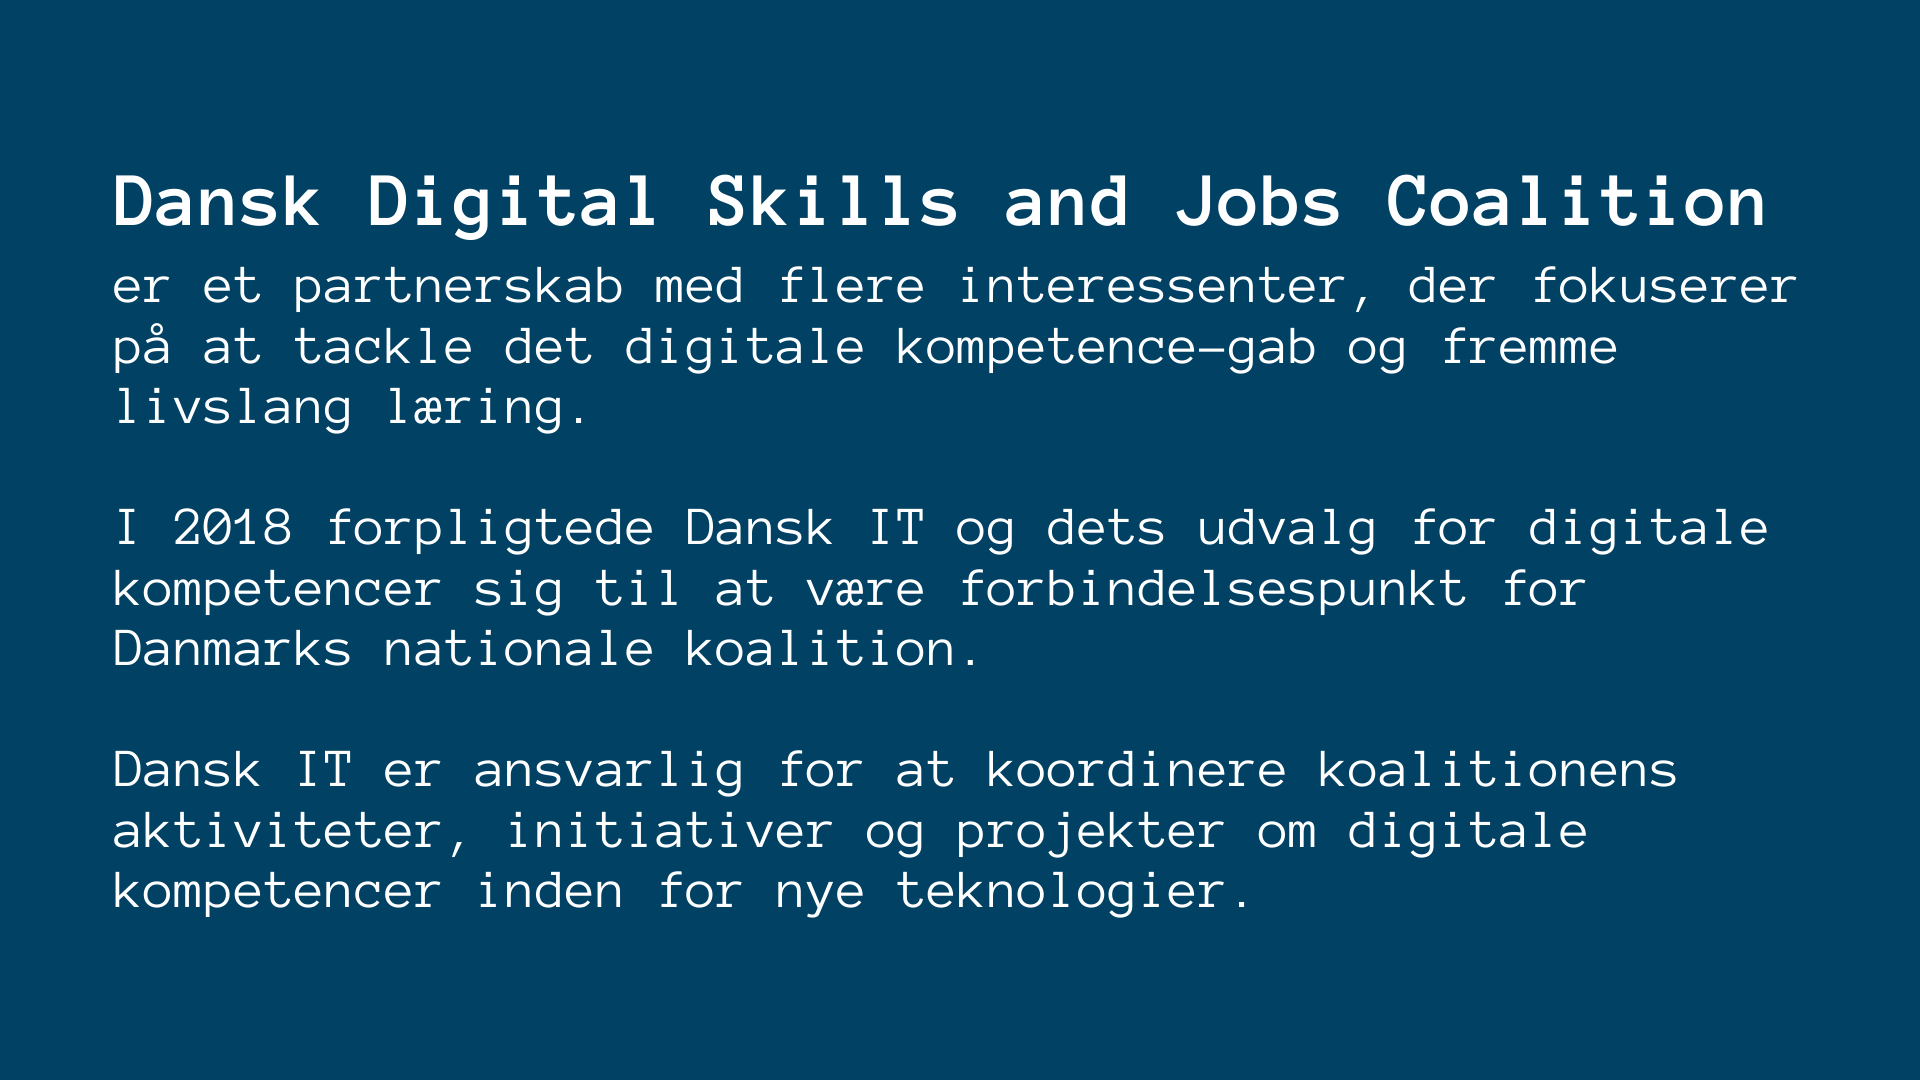 DSJC Denmark